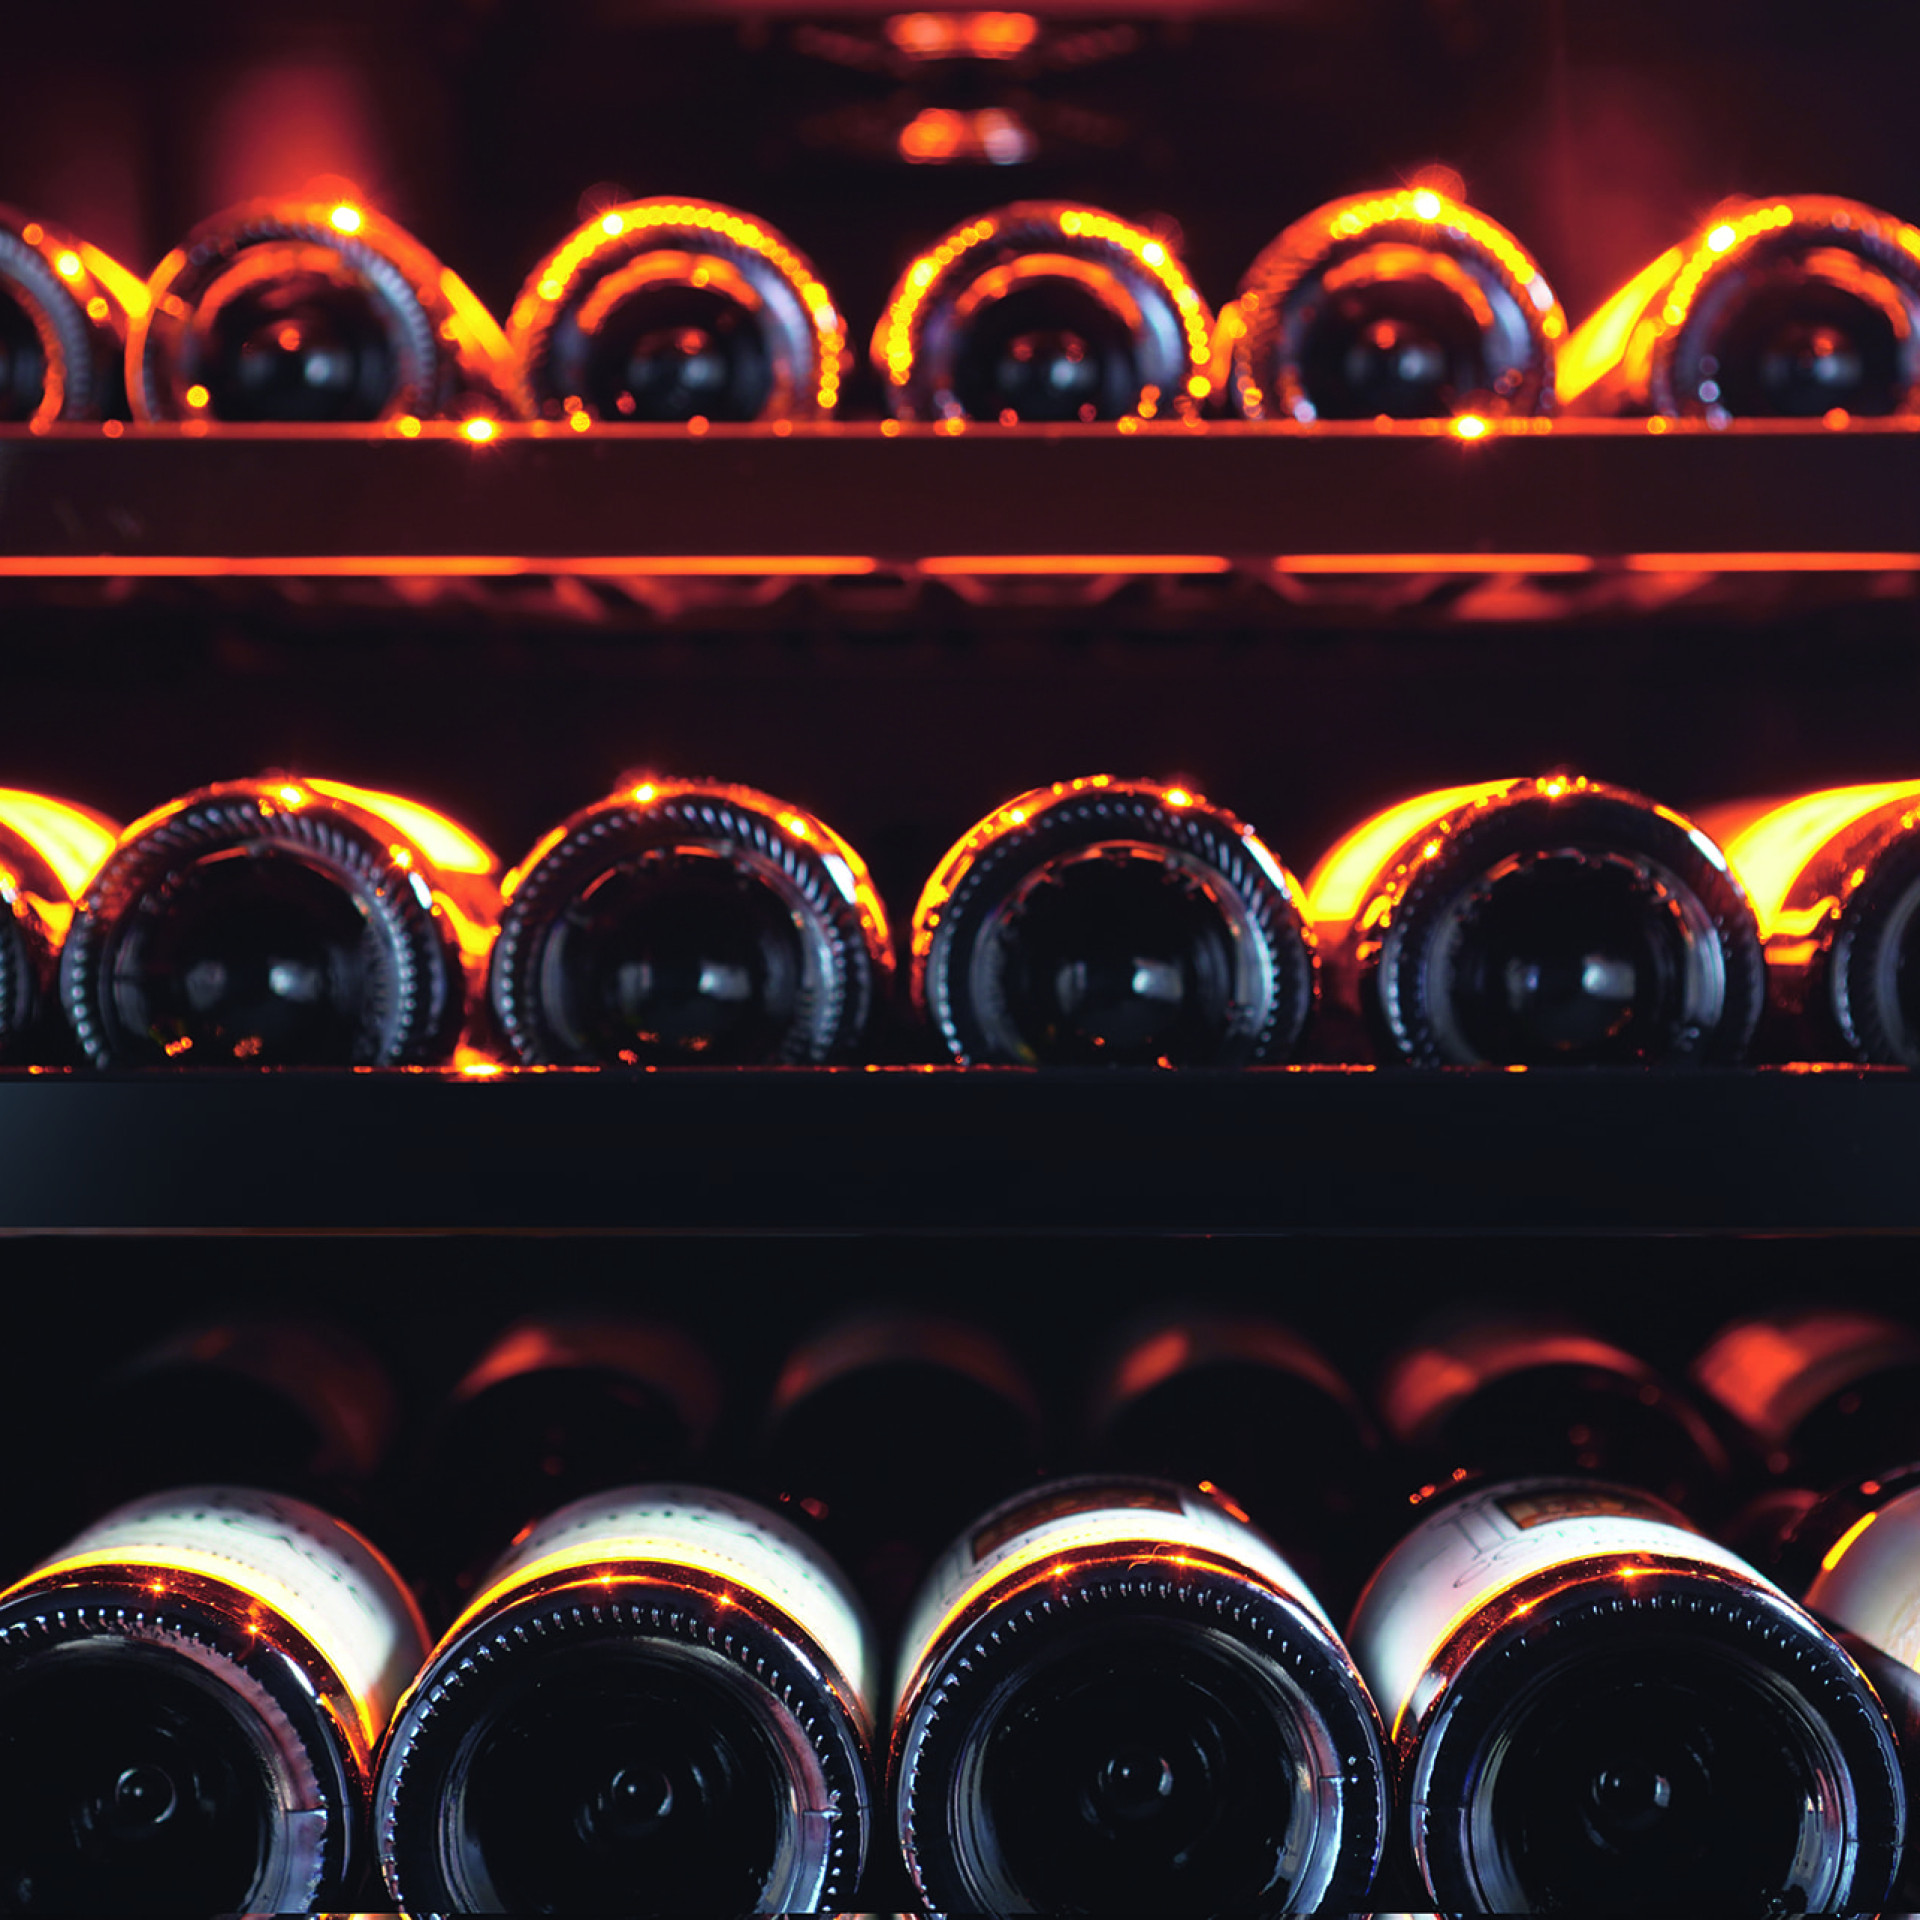 Lagerung im Weinschrank – Metallregale mit einzelnen Flaschenhaltern, glänzend schwarze Vorderseite.